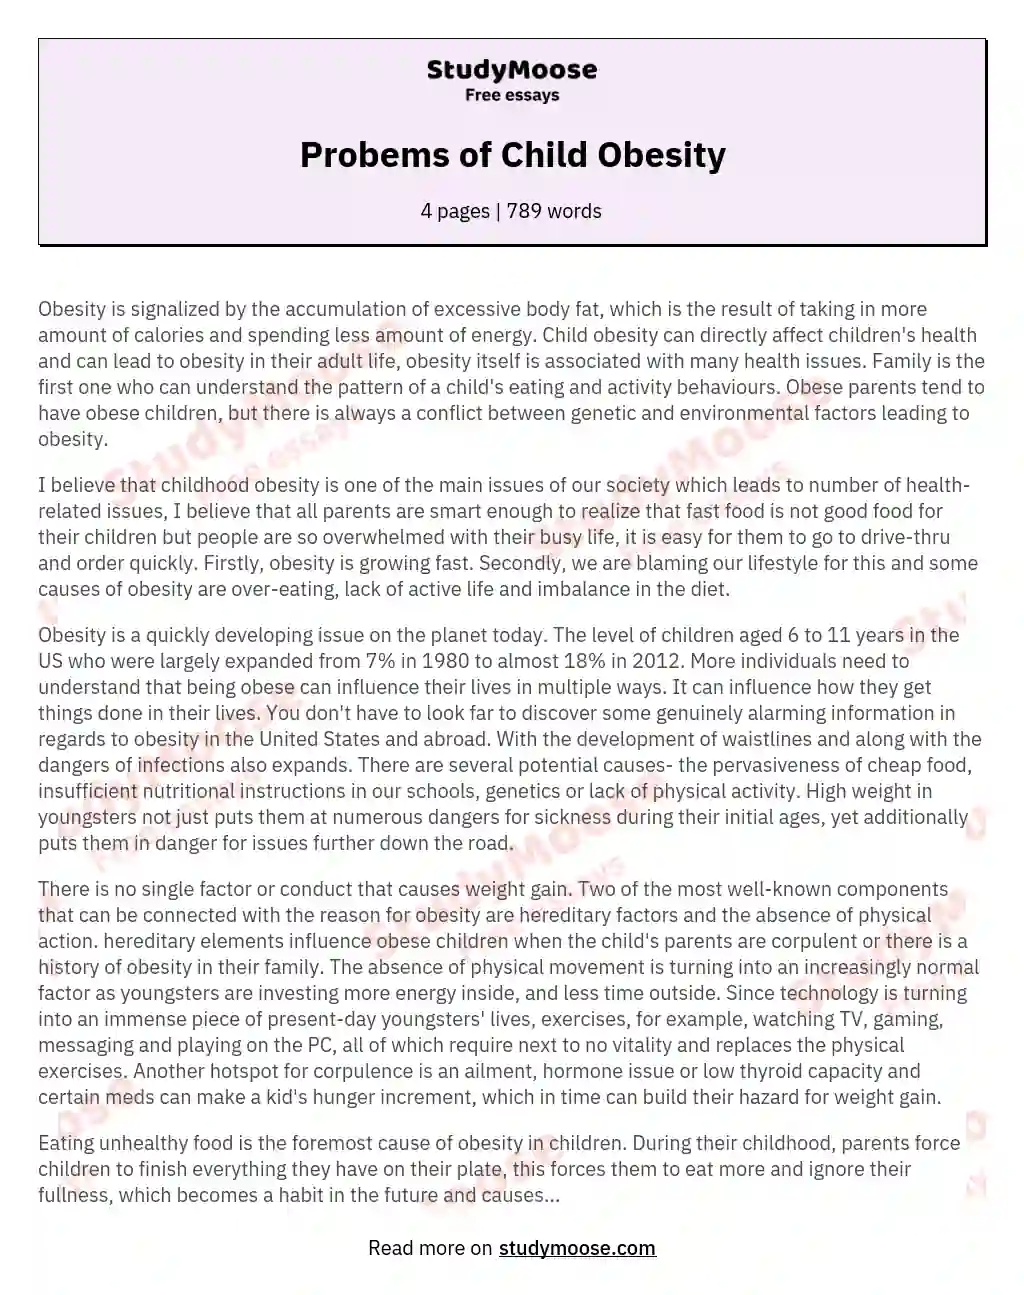 Probems of Child Obesity essay